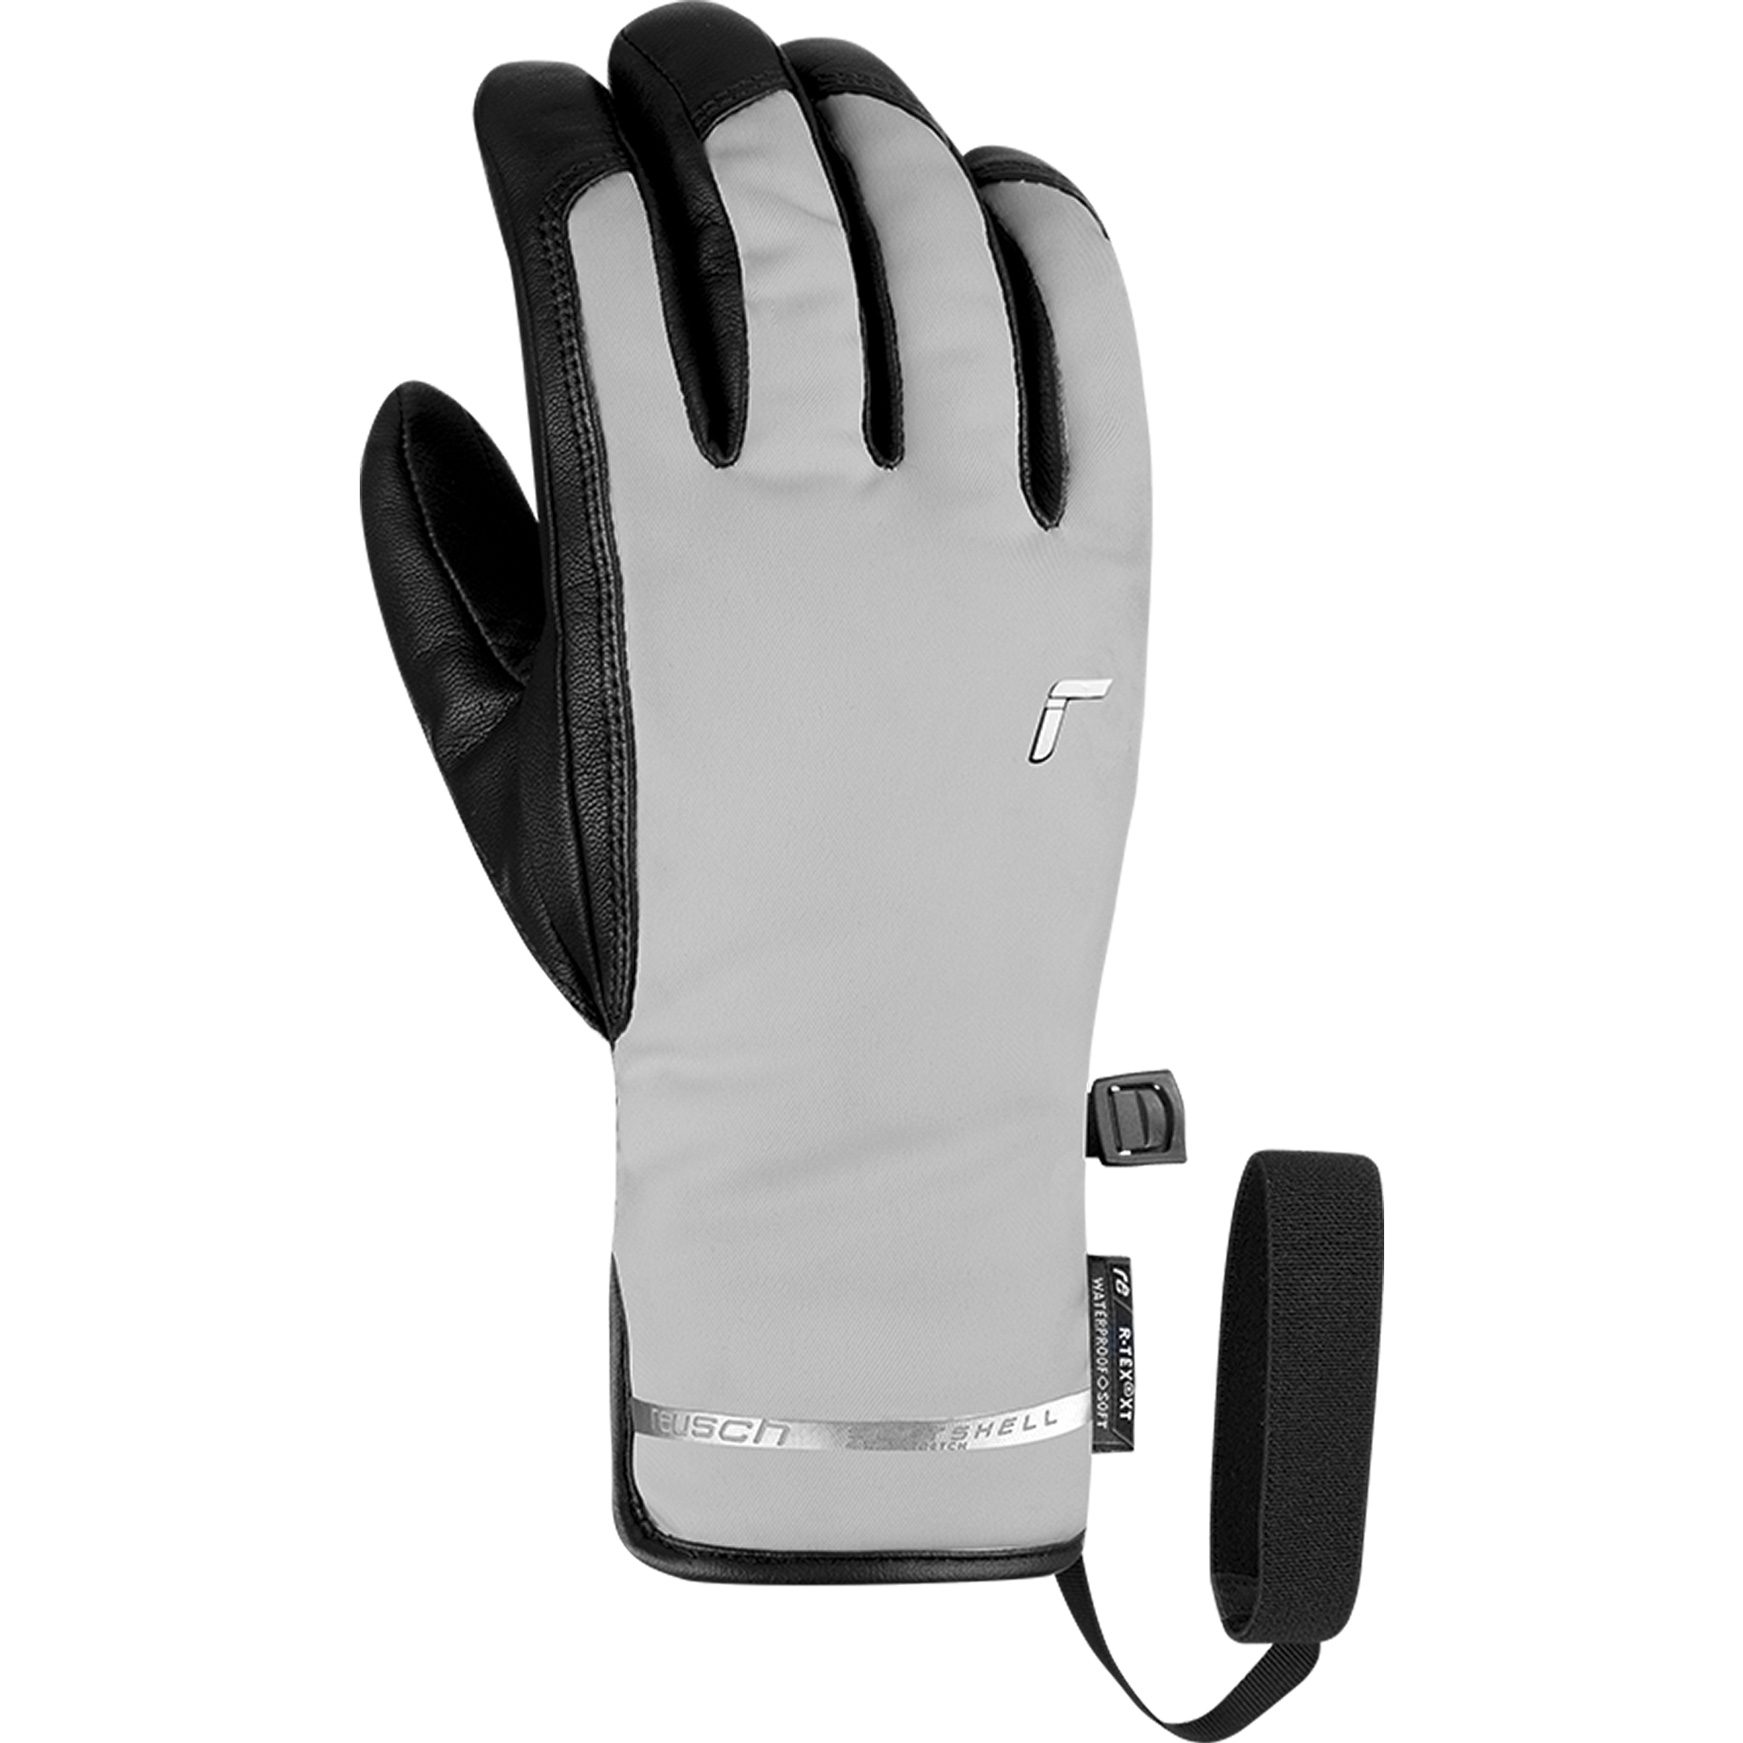 Reusch - R-Tex® Bittl Explorer Shop PCR im glacier Handschuhe Damen grey Pro Sport kaufen